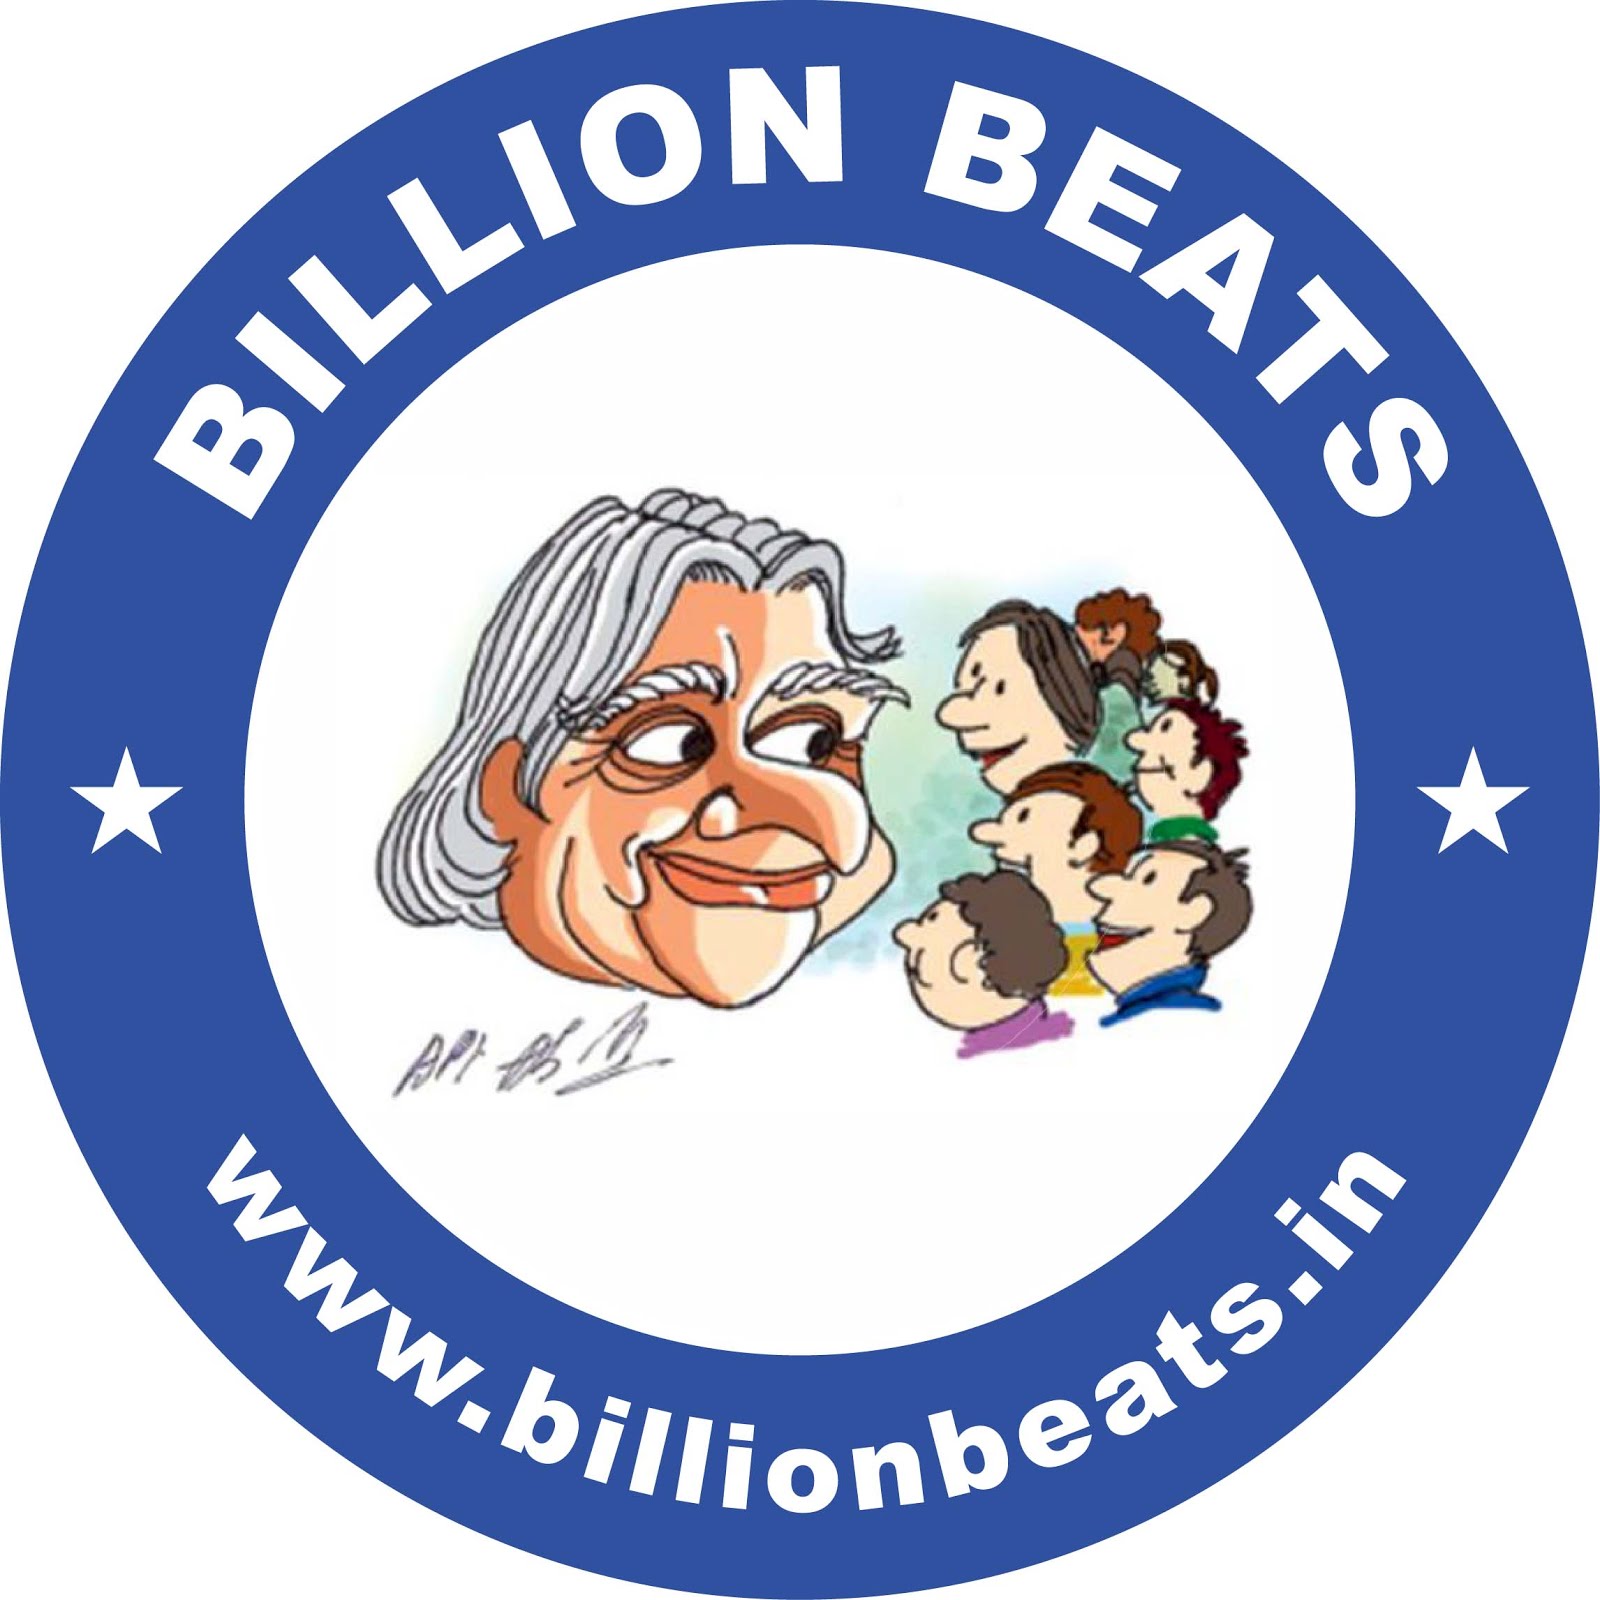 Billion Beats